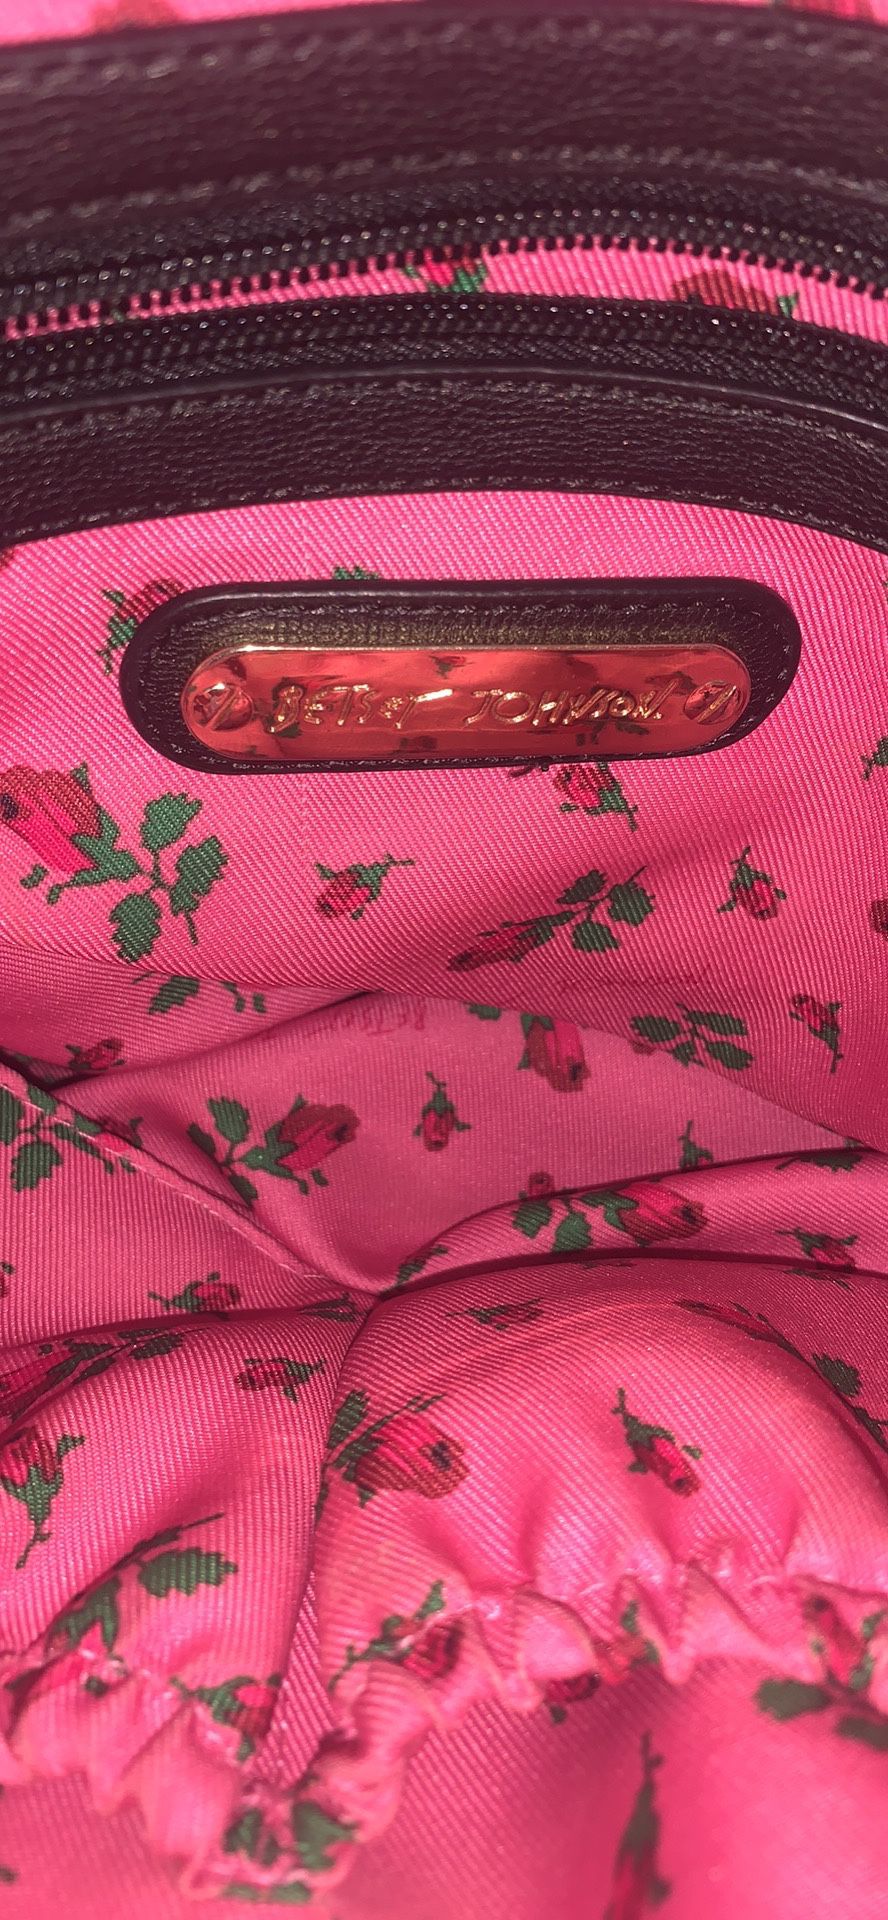 Betsy Johnson purse